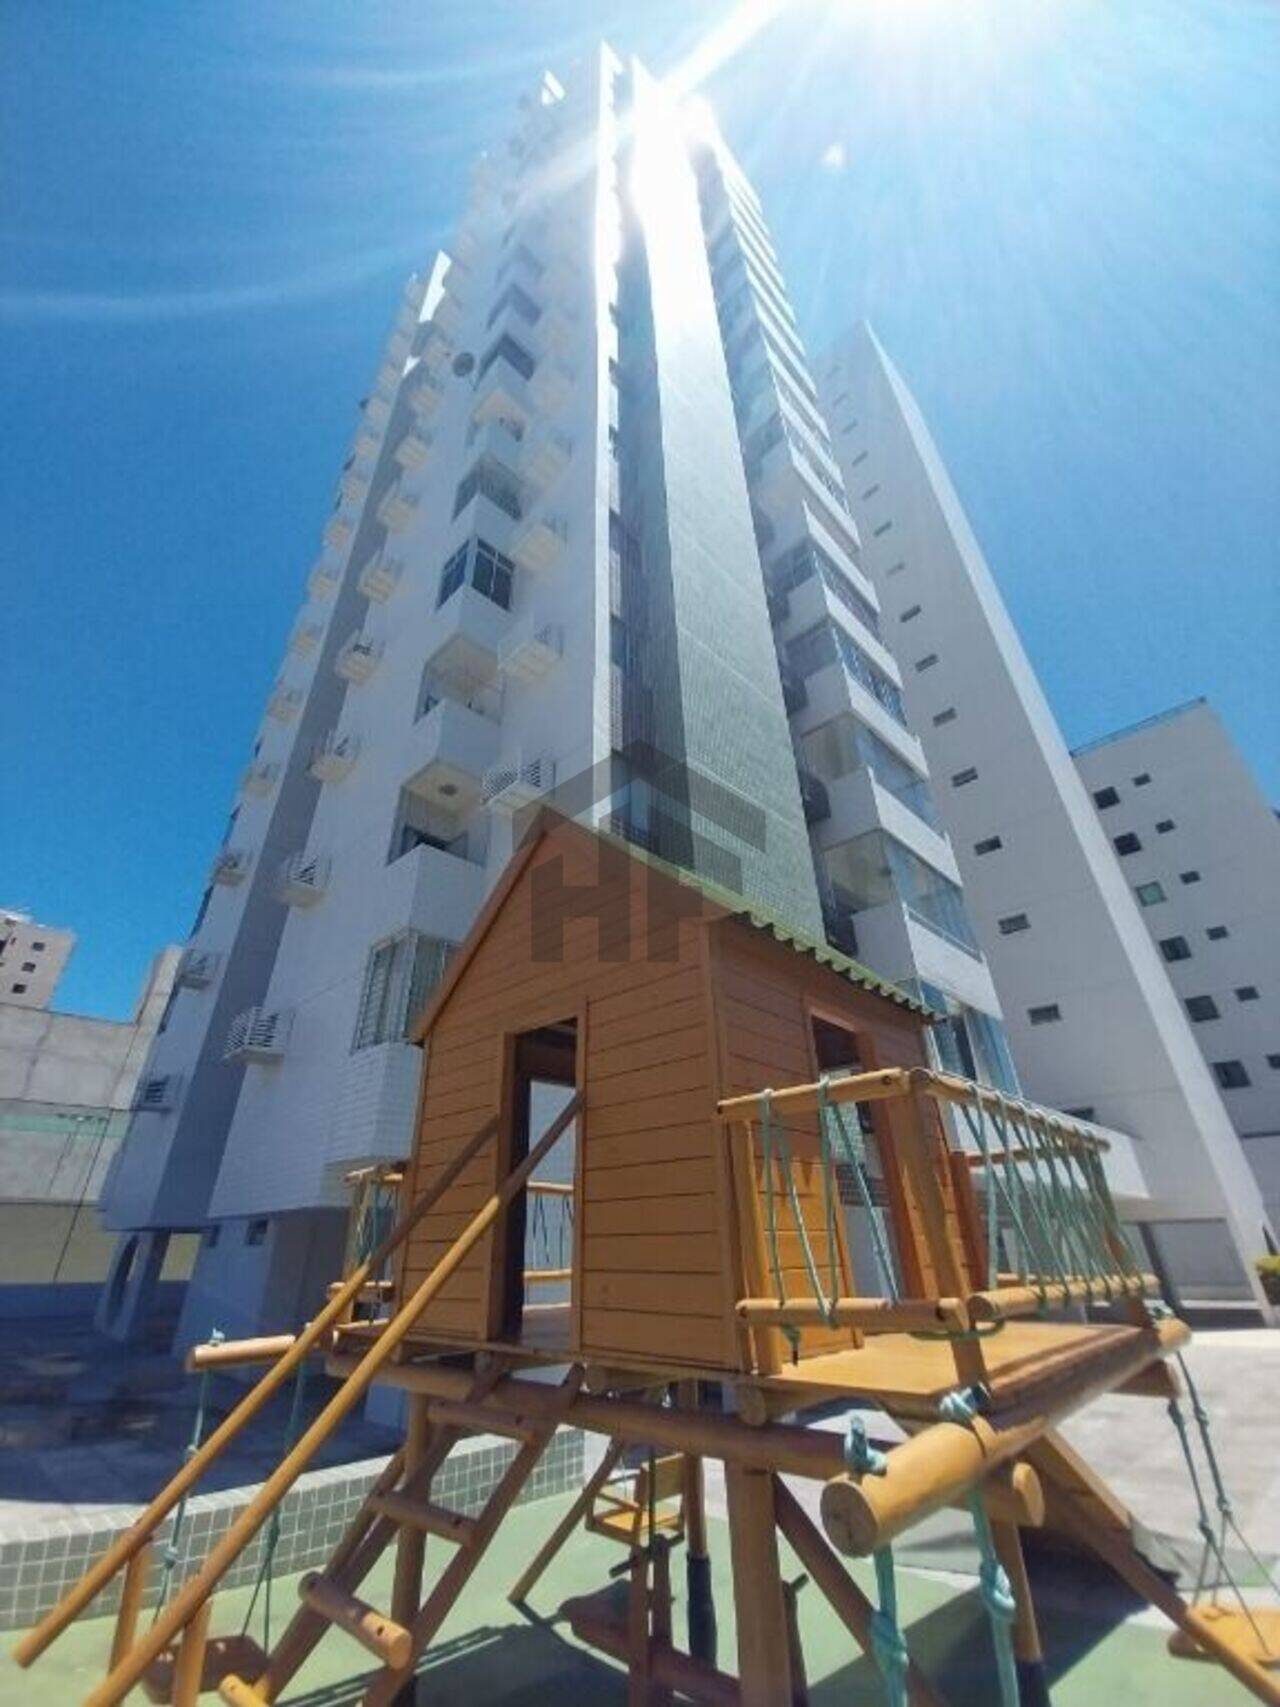 Apartamento Boa Viagem, Recife - PE